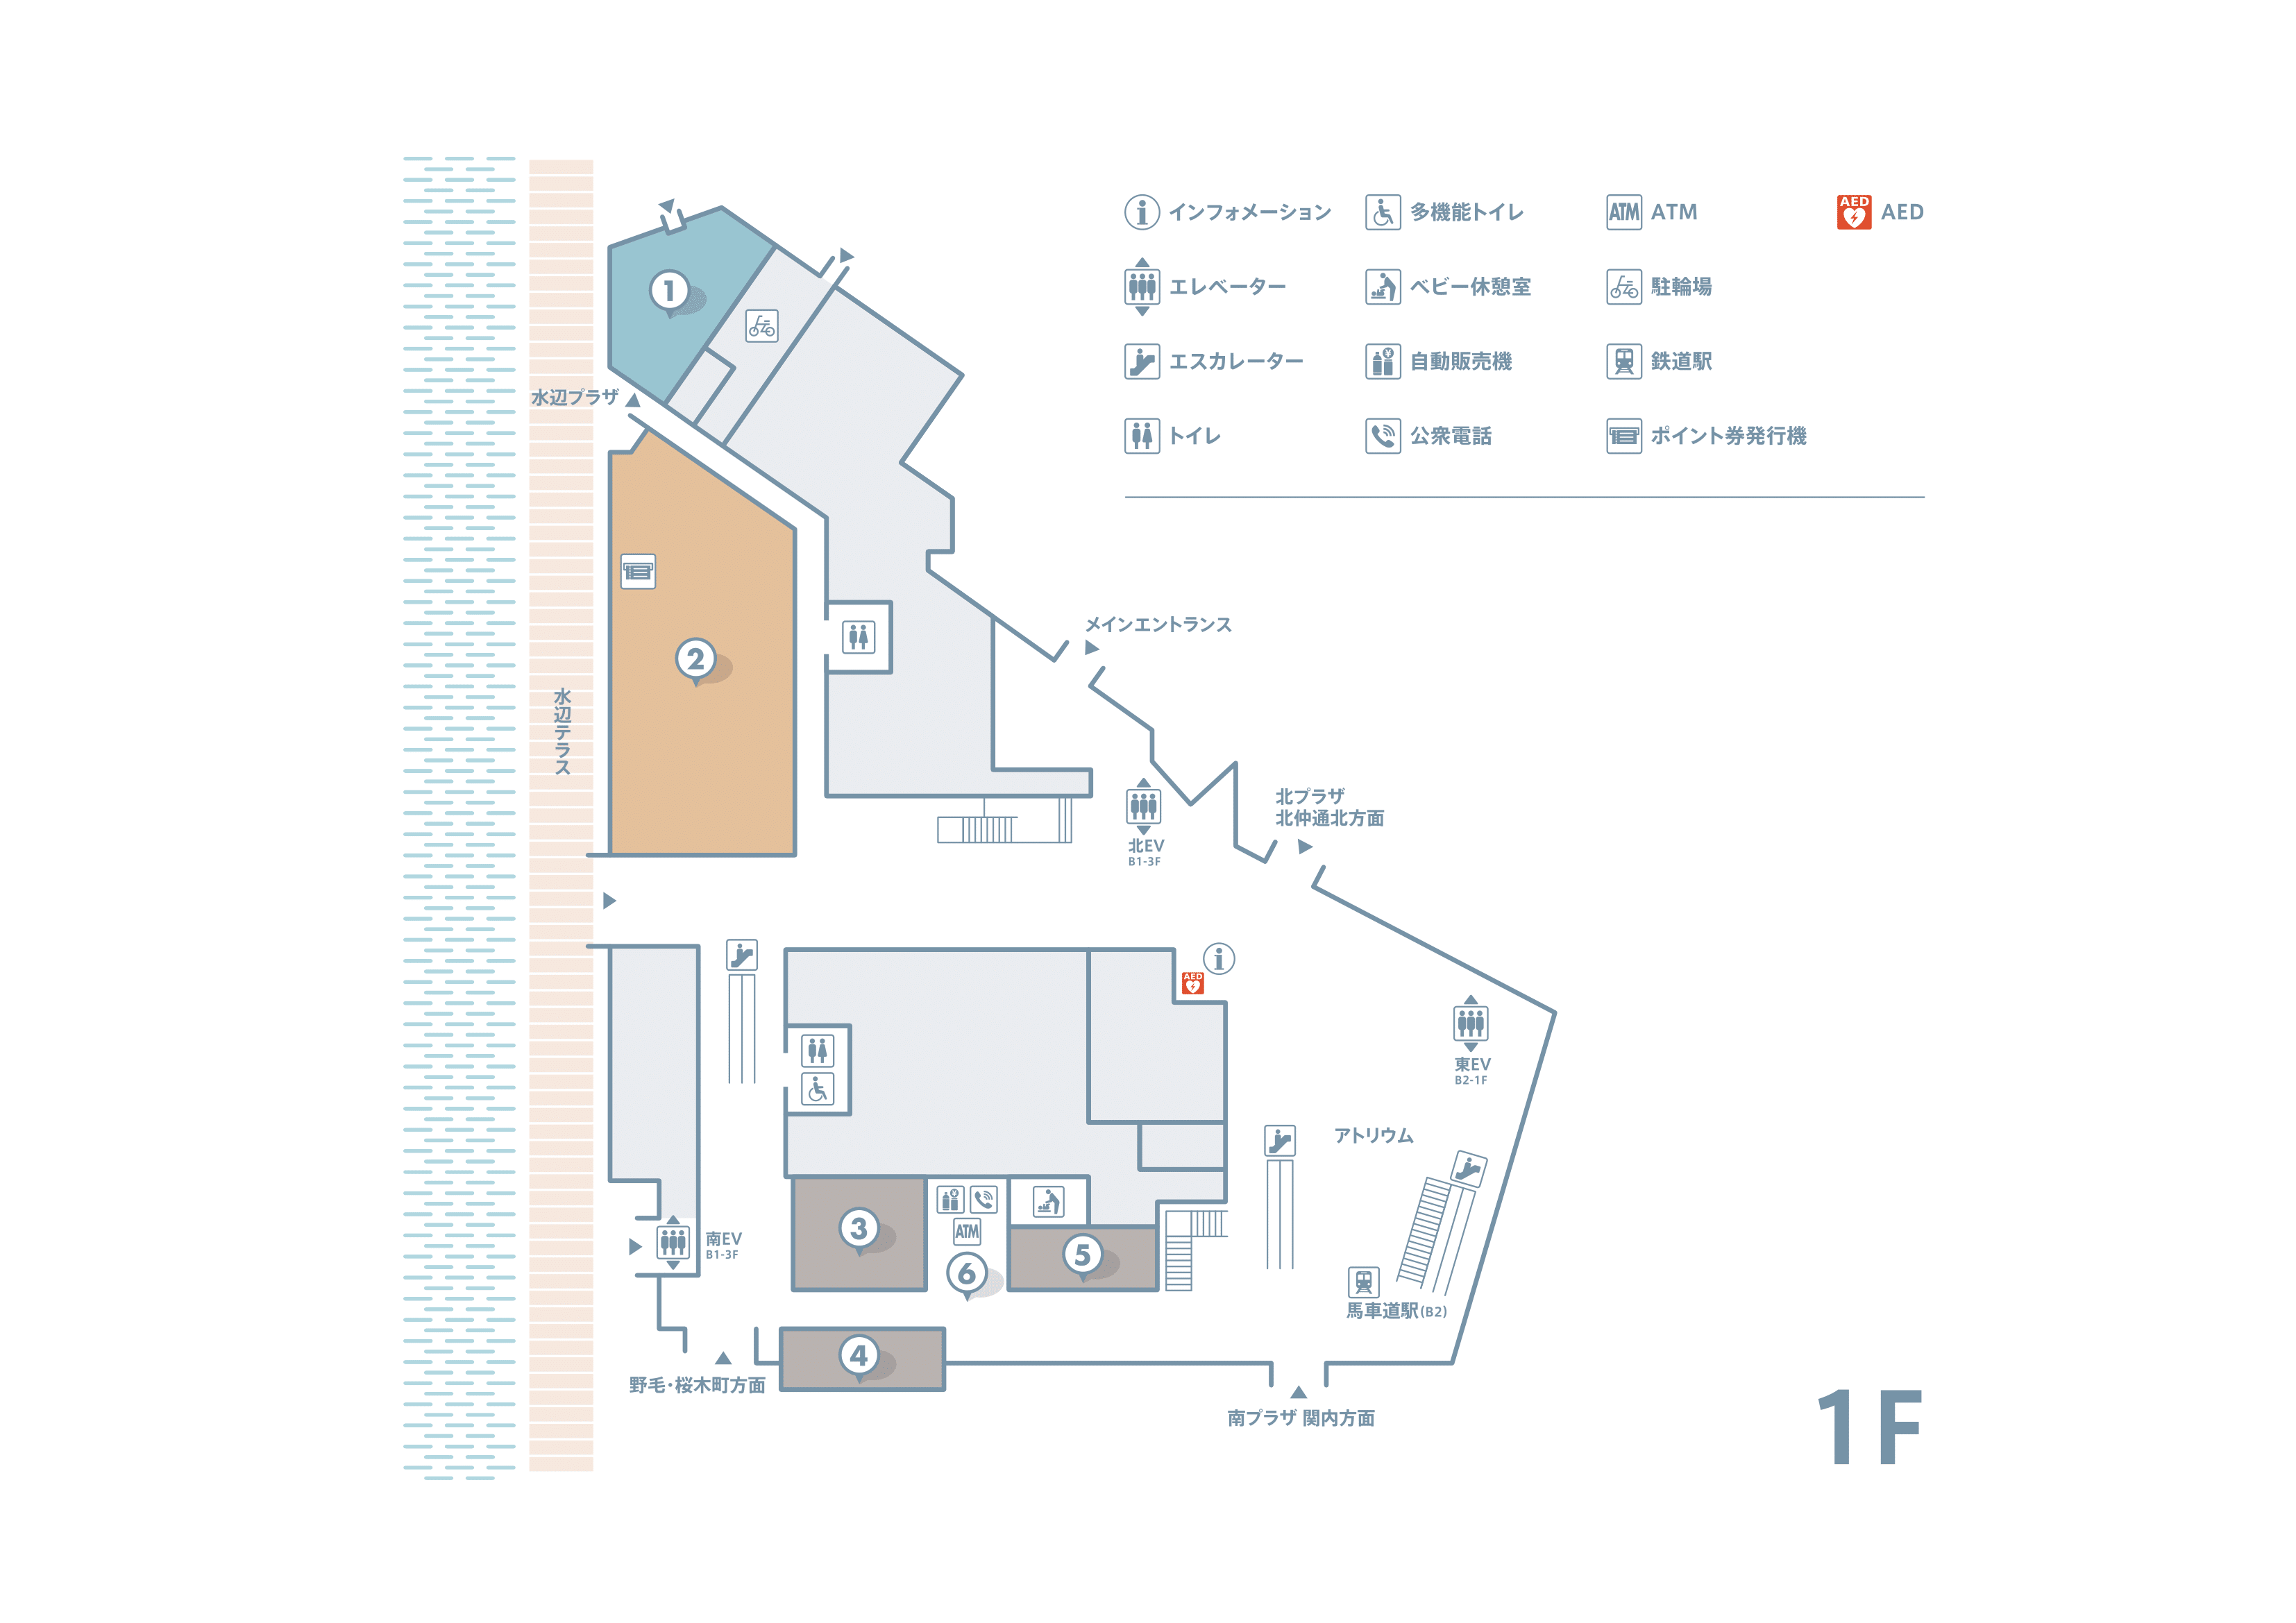 1f floor map